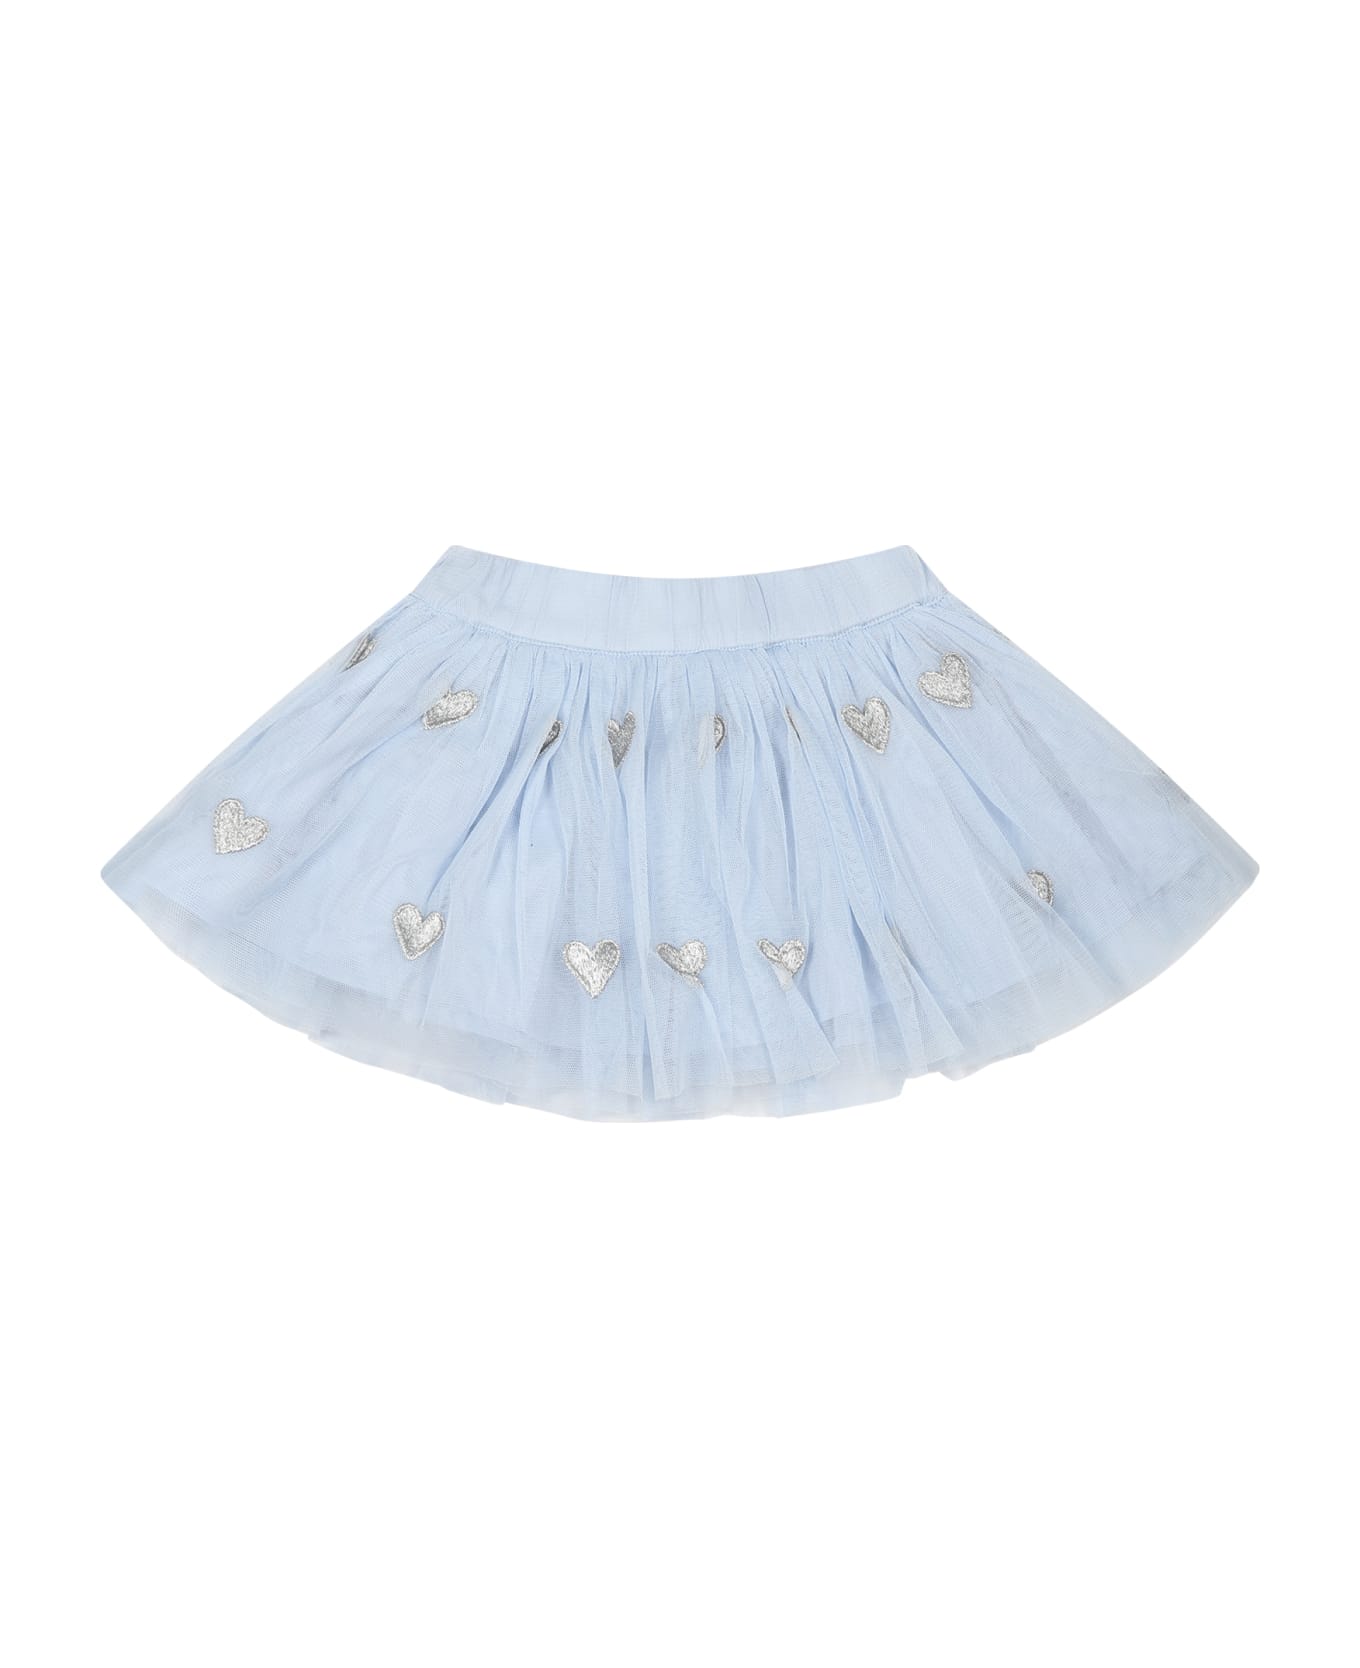 Stella McCartney Kids Light Blue Skirt For Baby Girl With Hearts - Light Blue